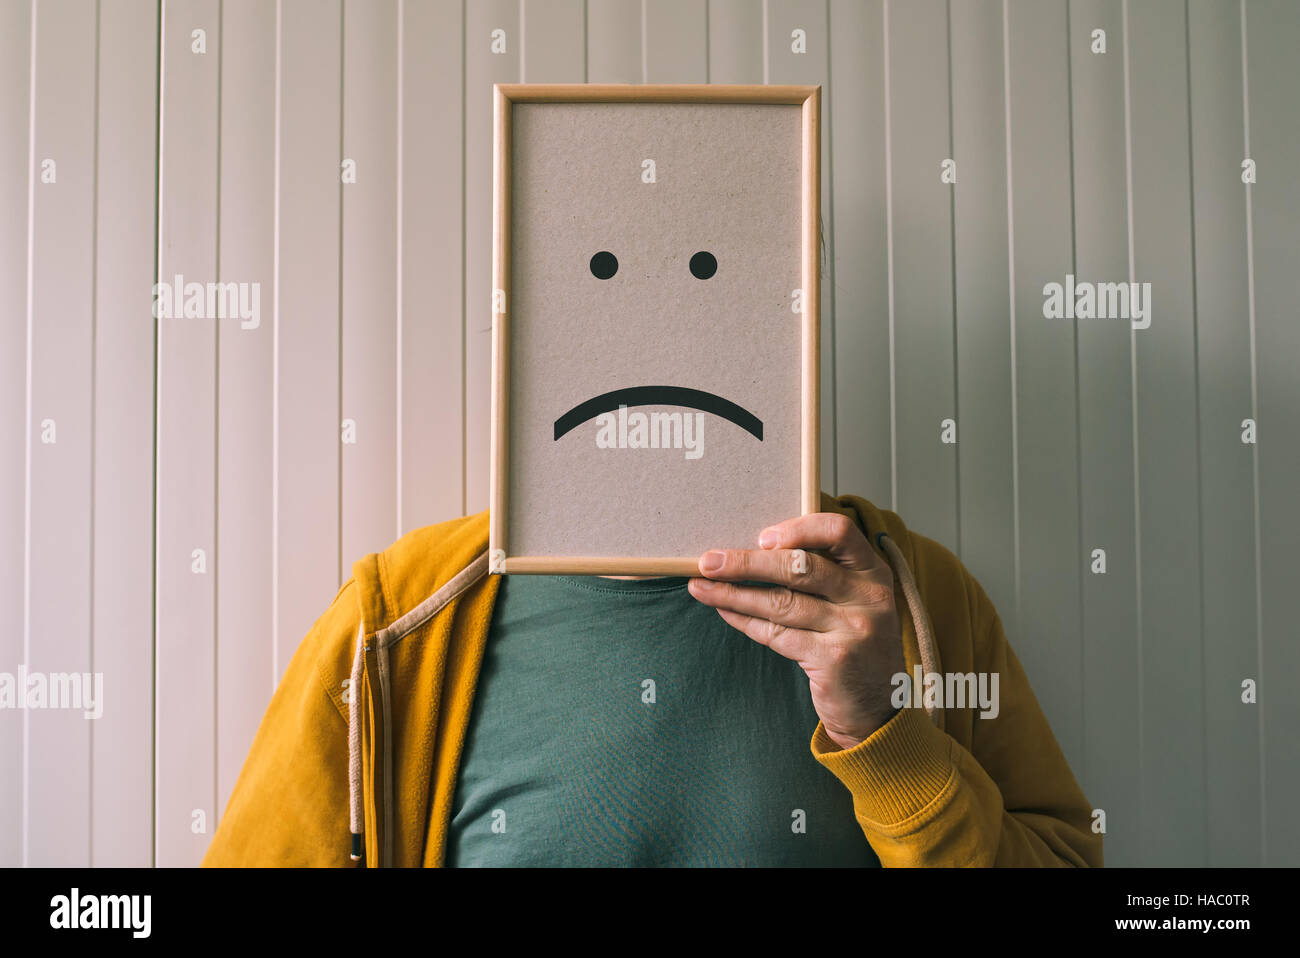 Mettez un visage sur pessimiste triste, tristesse et dépression émotions concept, man holding photo frame avec imprimé émoticône smiley Banque D'Images